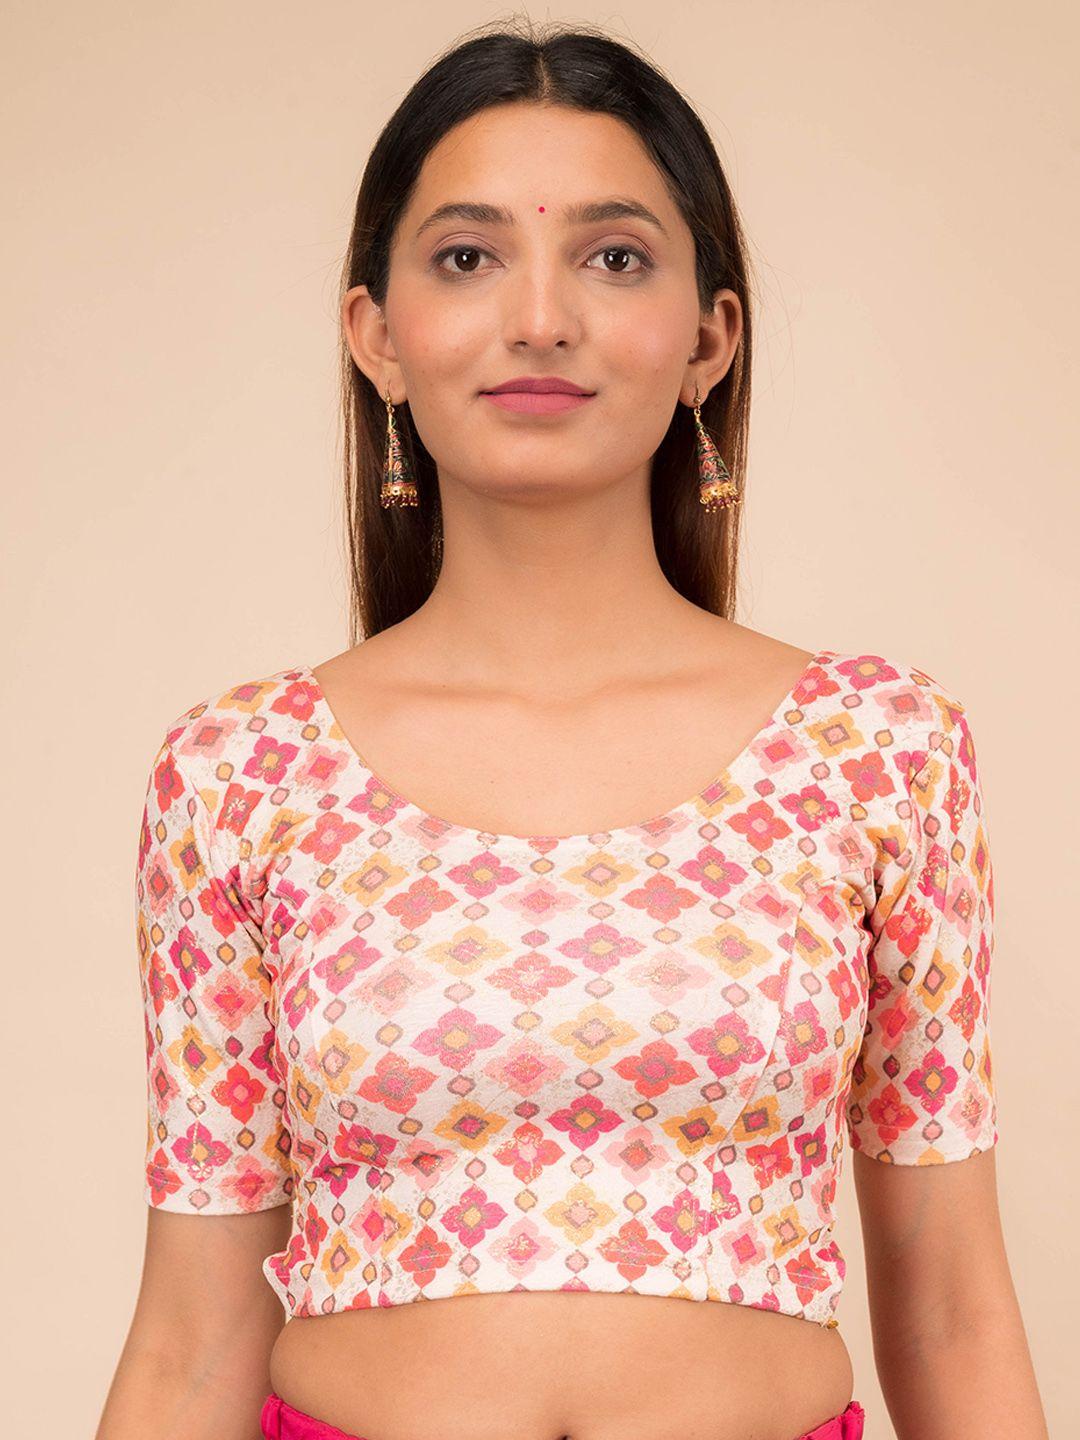 bindigasm's advi printed jacquard  saree blouse